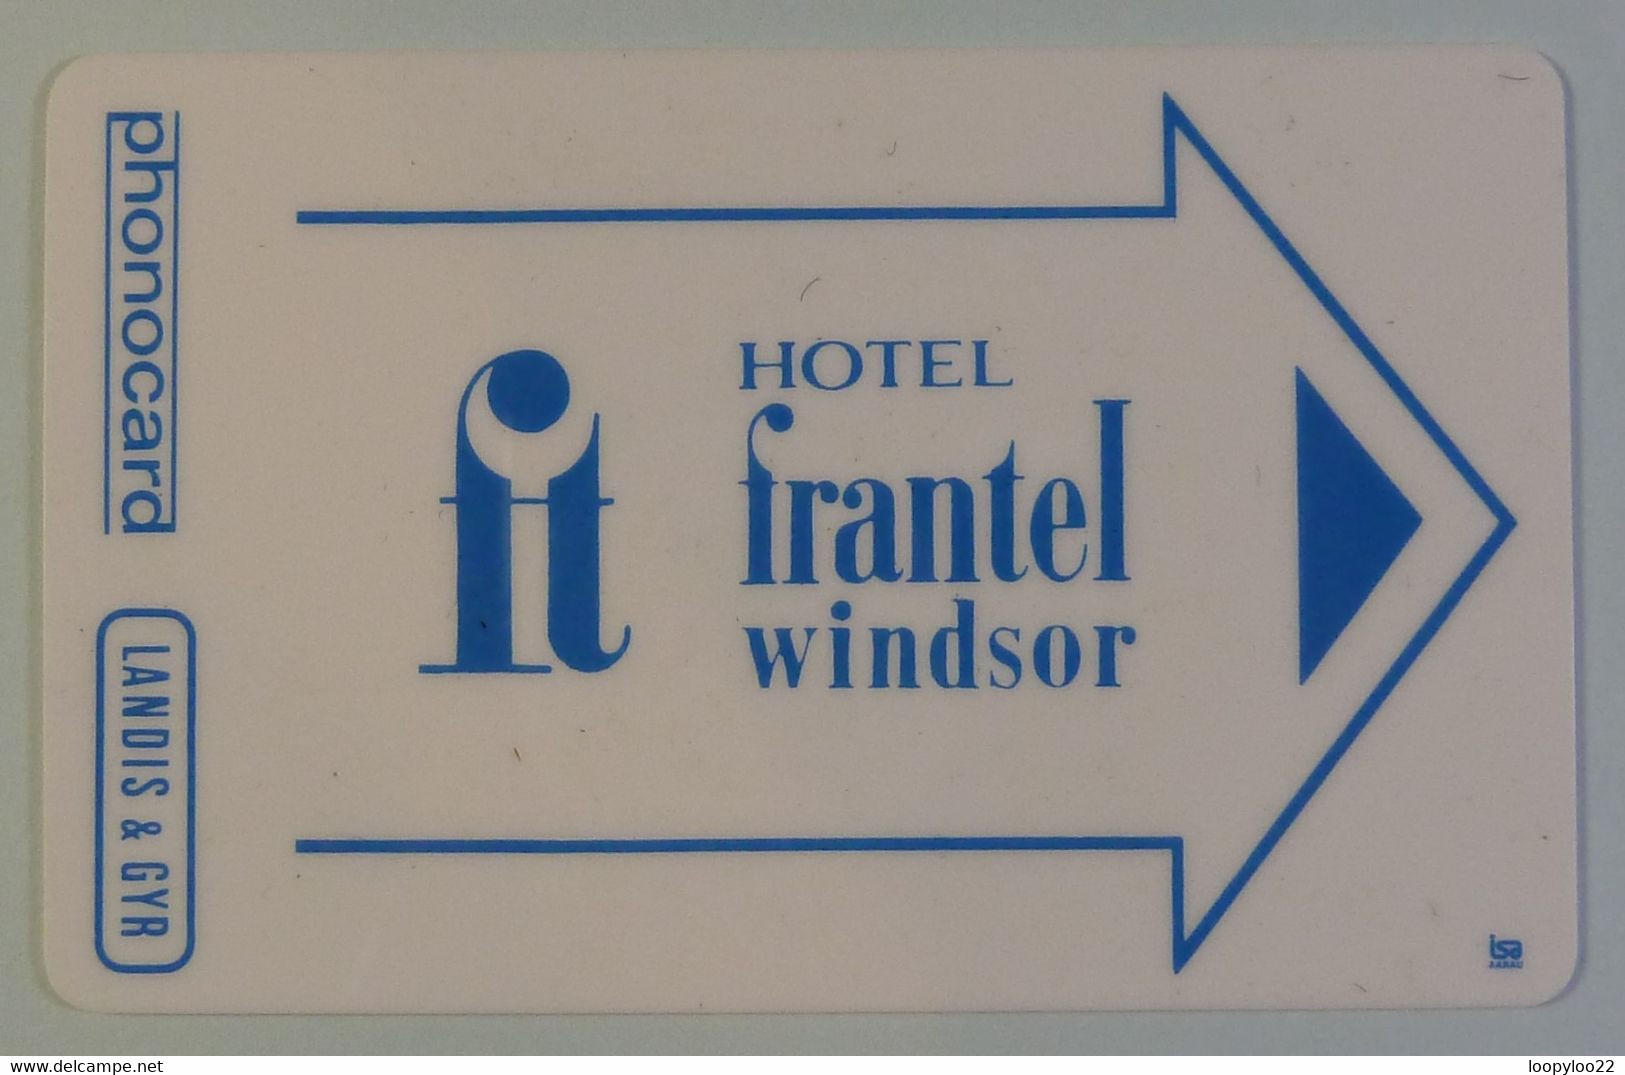 FRANCE - Landis & Gyr - Magnetic - Hotel Frantel Windsor - 1978 - Very RARE - Internes